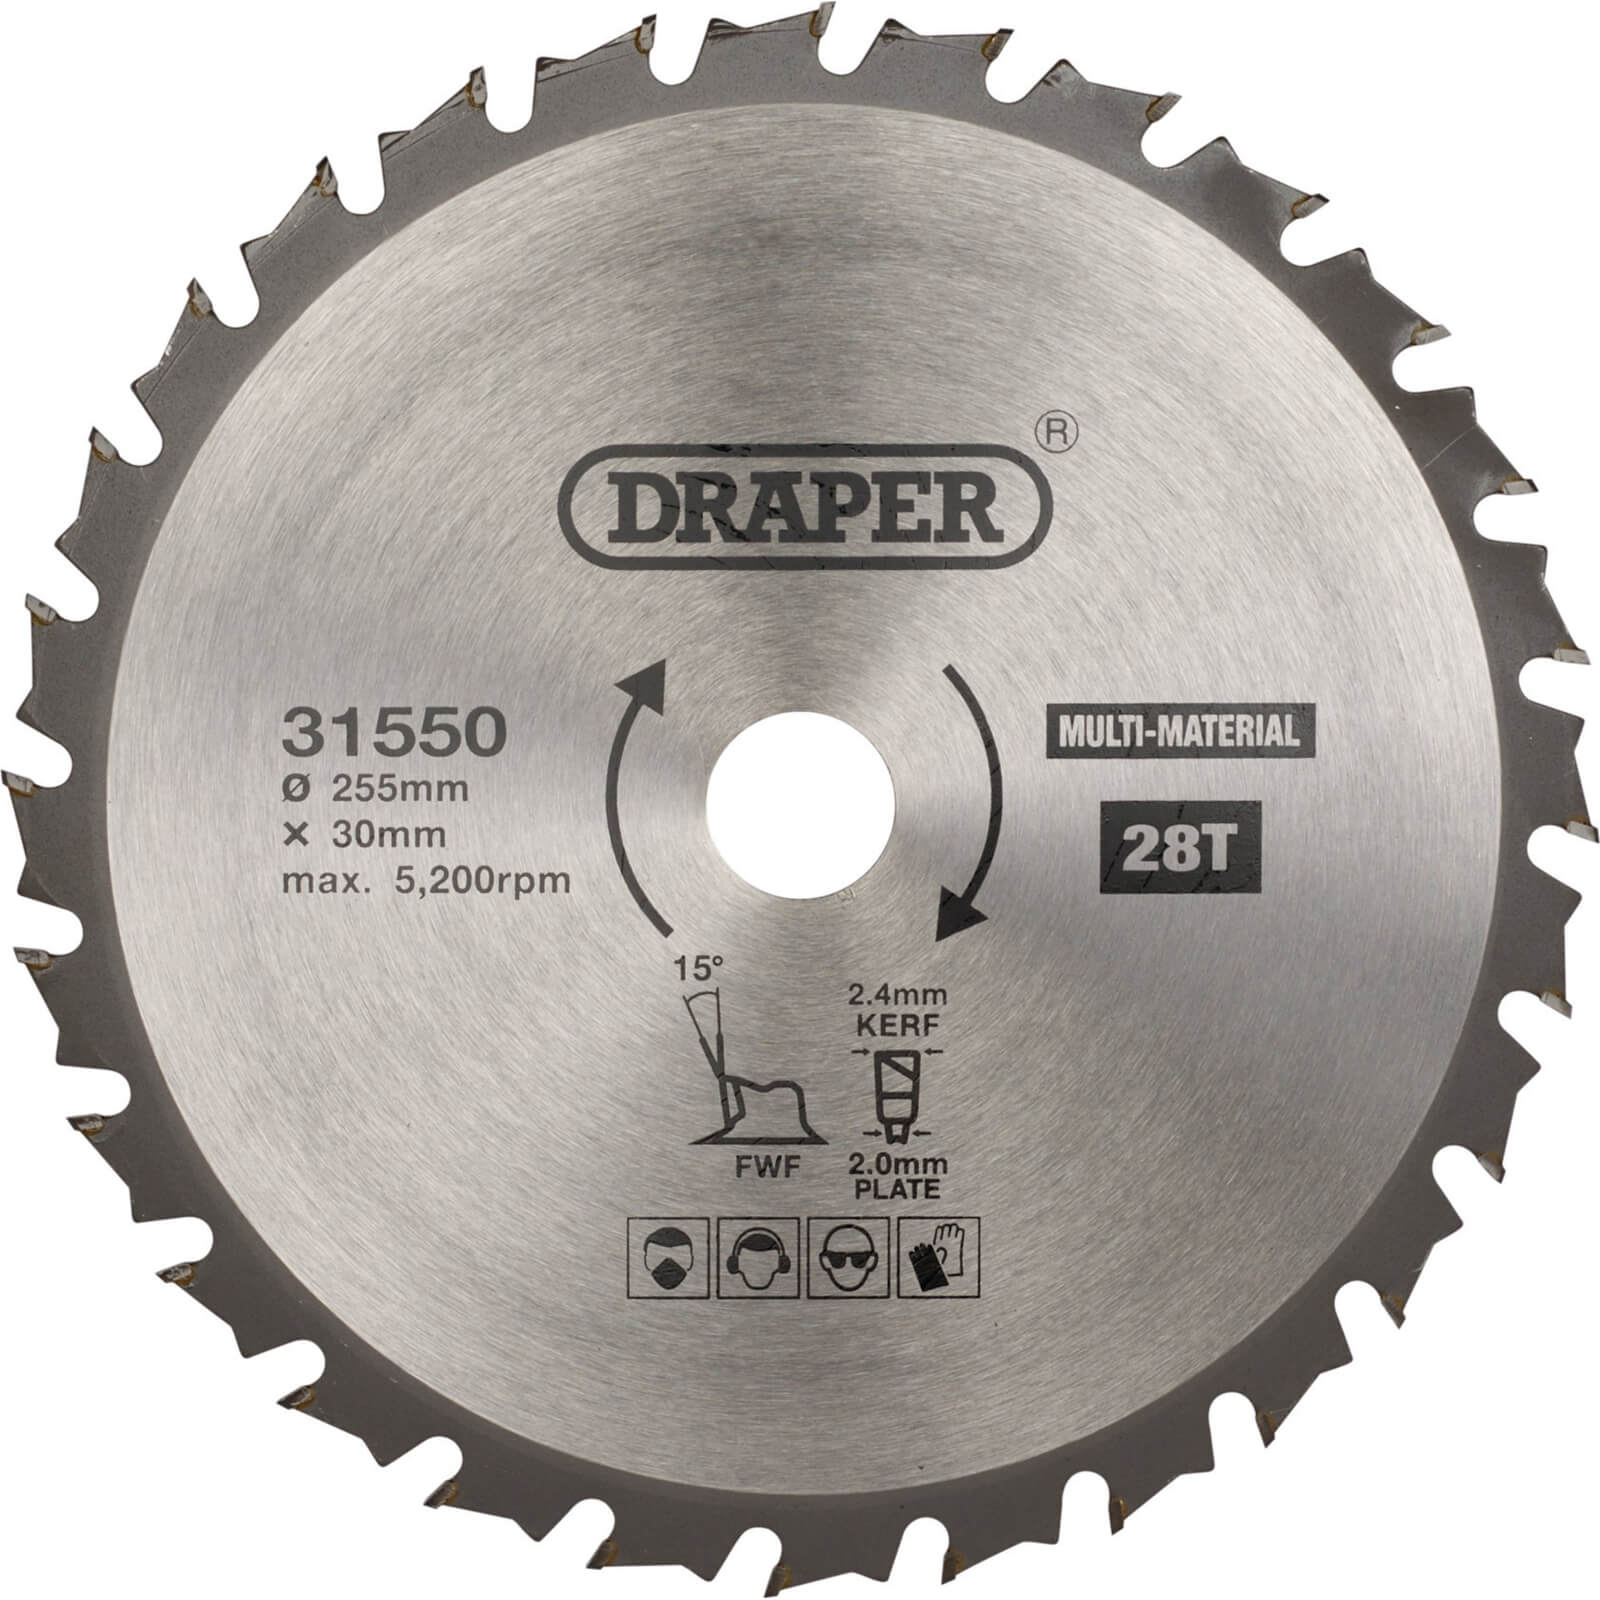 Image of Draper TCT Multi Purpose Circular Saw Blade 255mm 28T 30mm